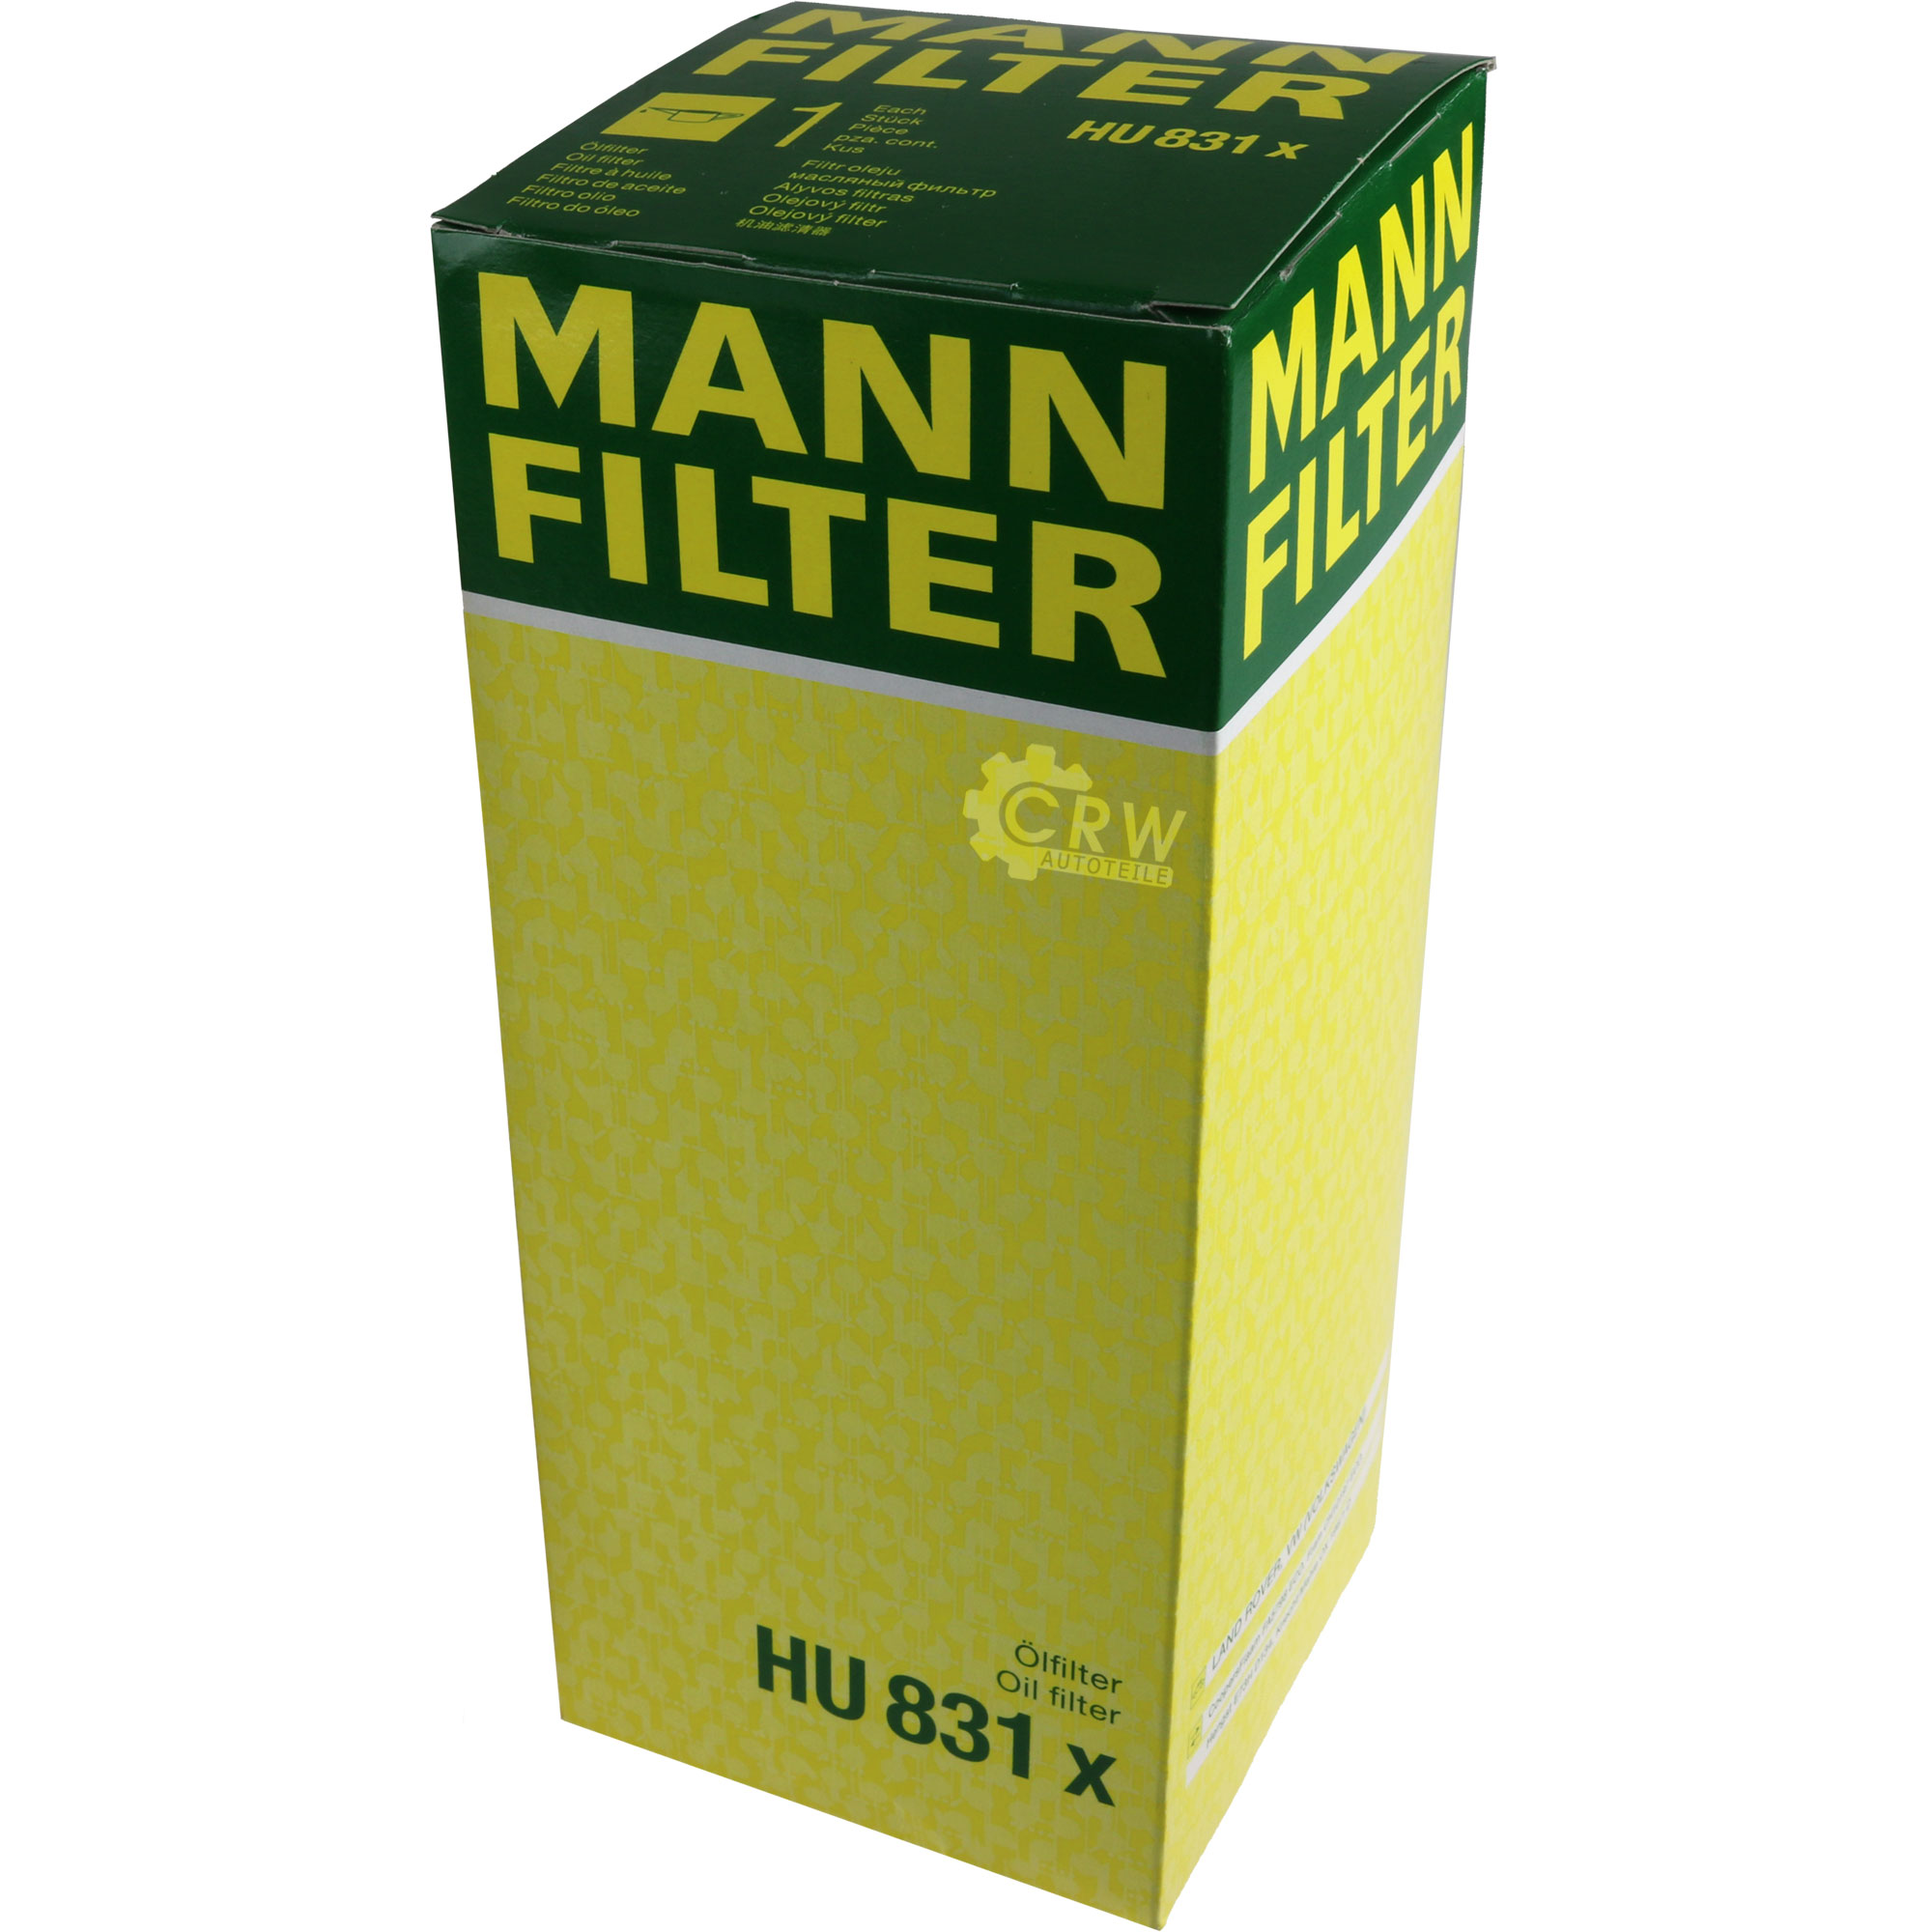 MANN-FILTER Ölfilter HU 831 x Oil Filter